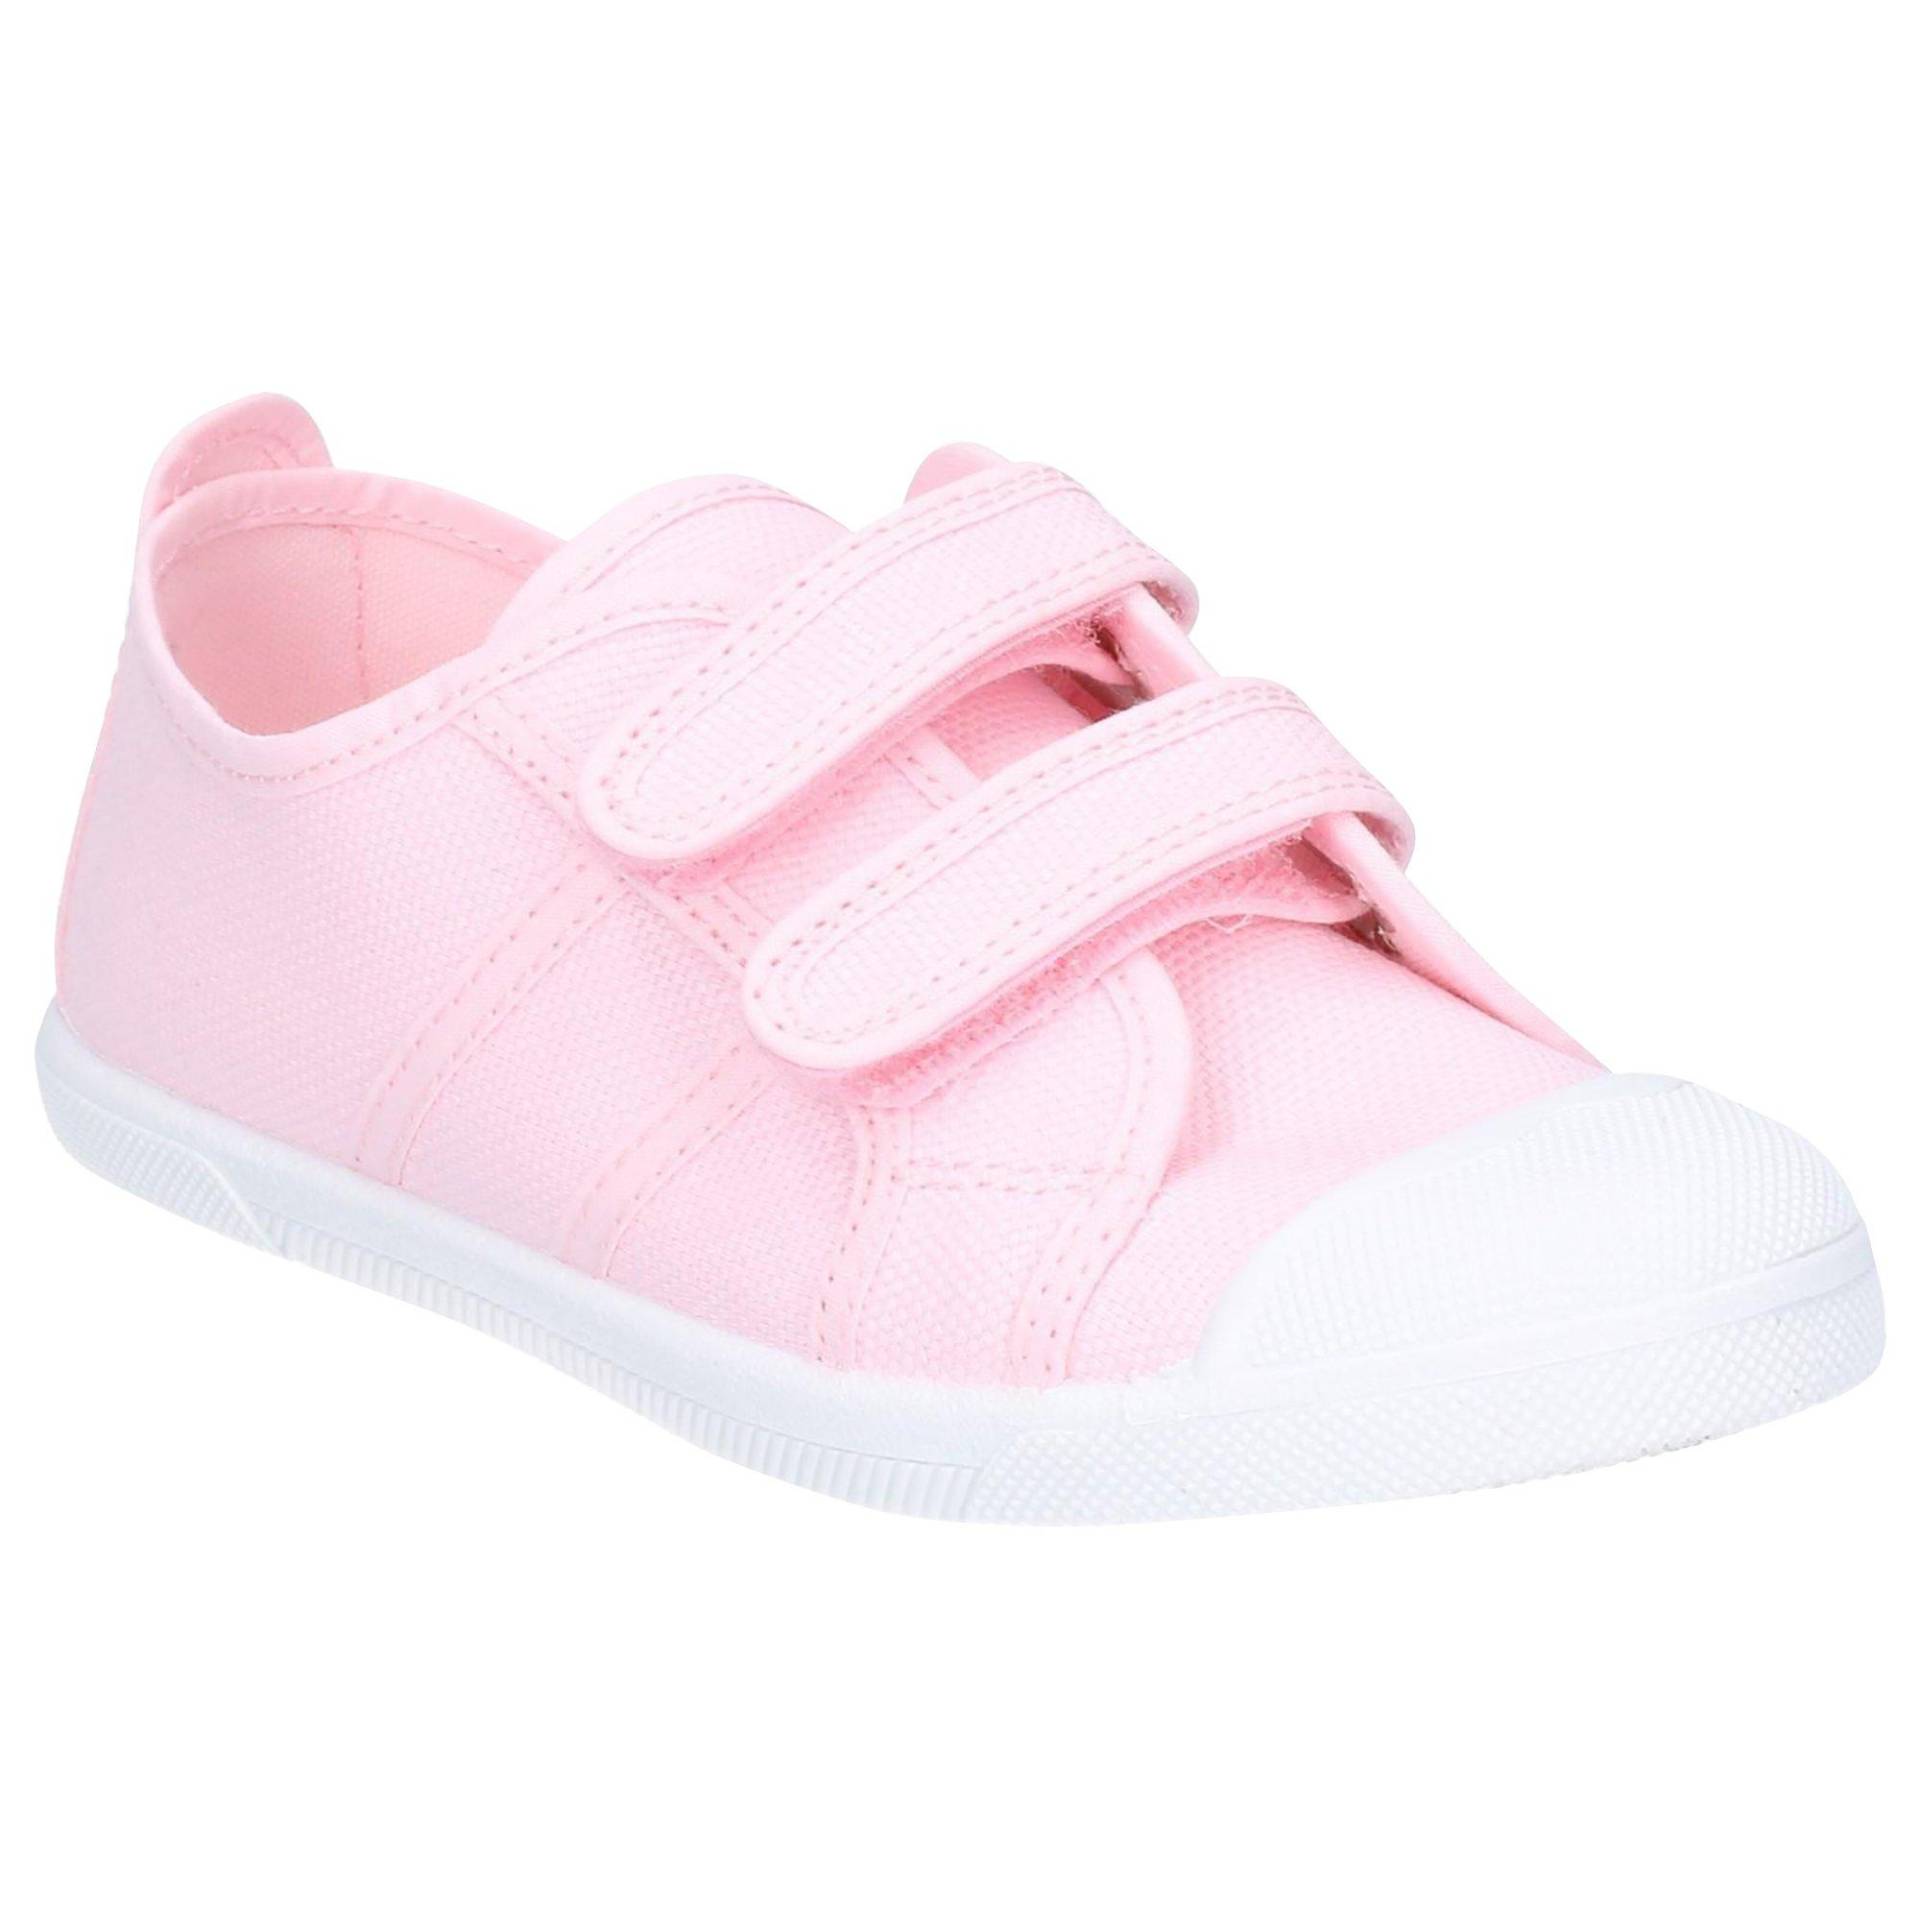 Schuhe Sasha Unisex Pink 22 von Flossy